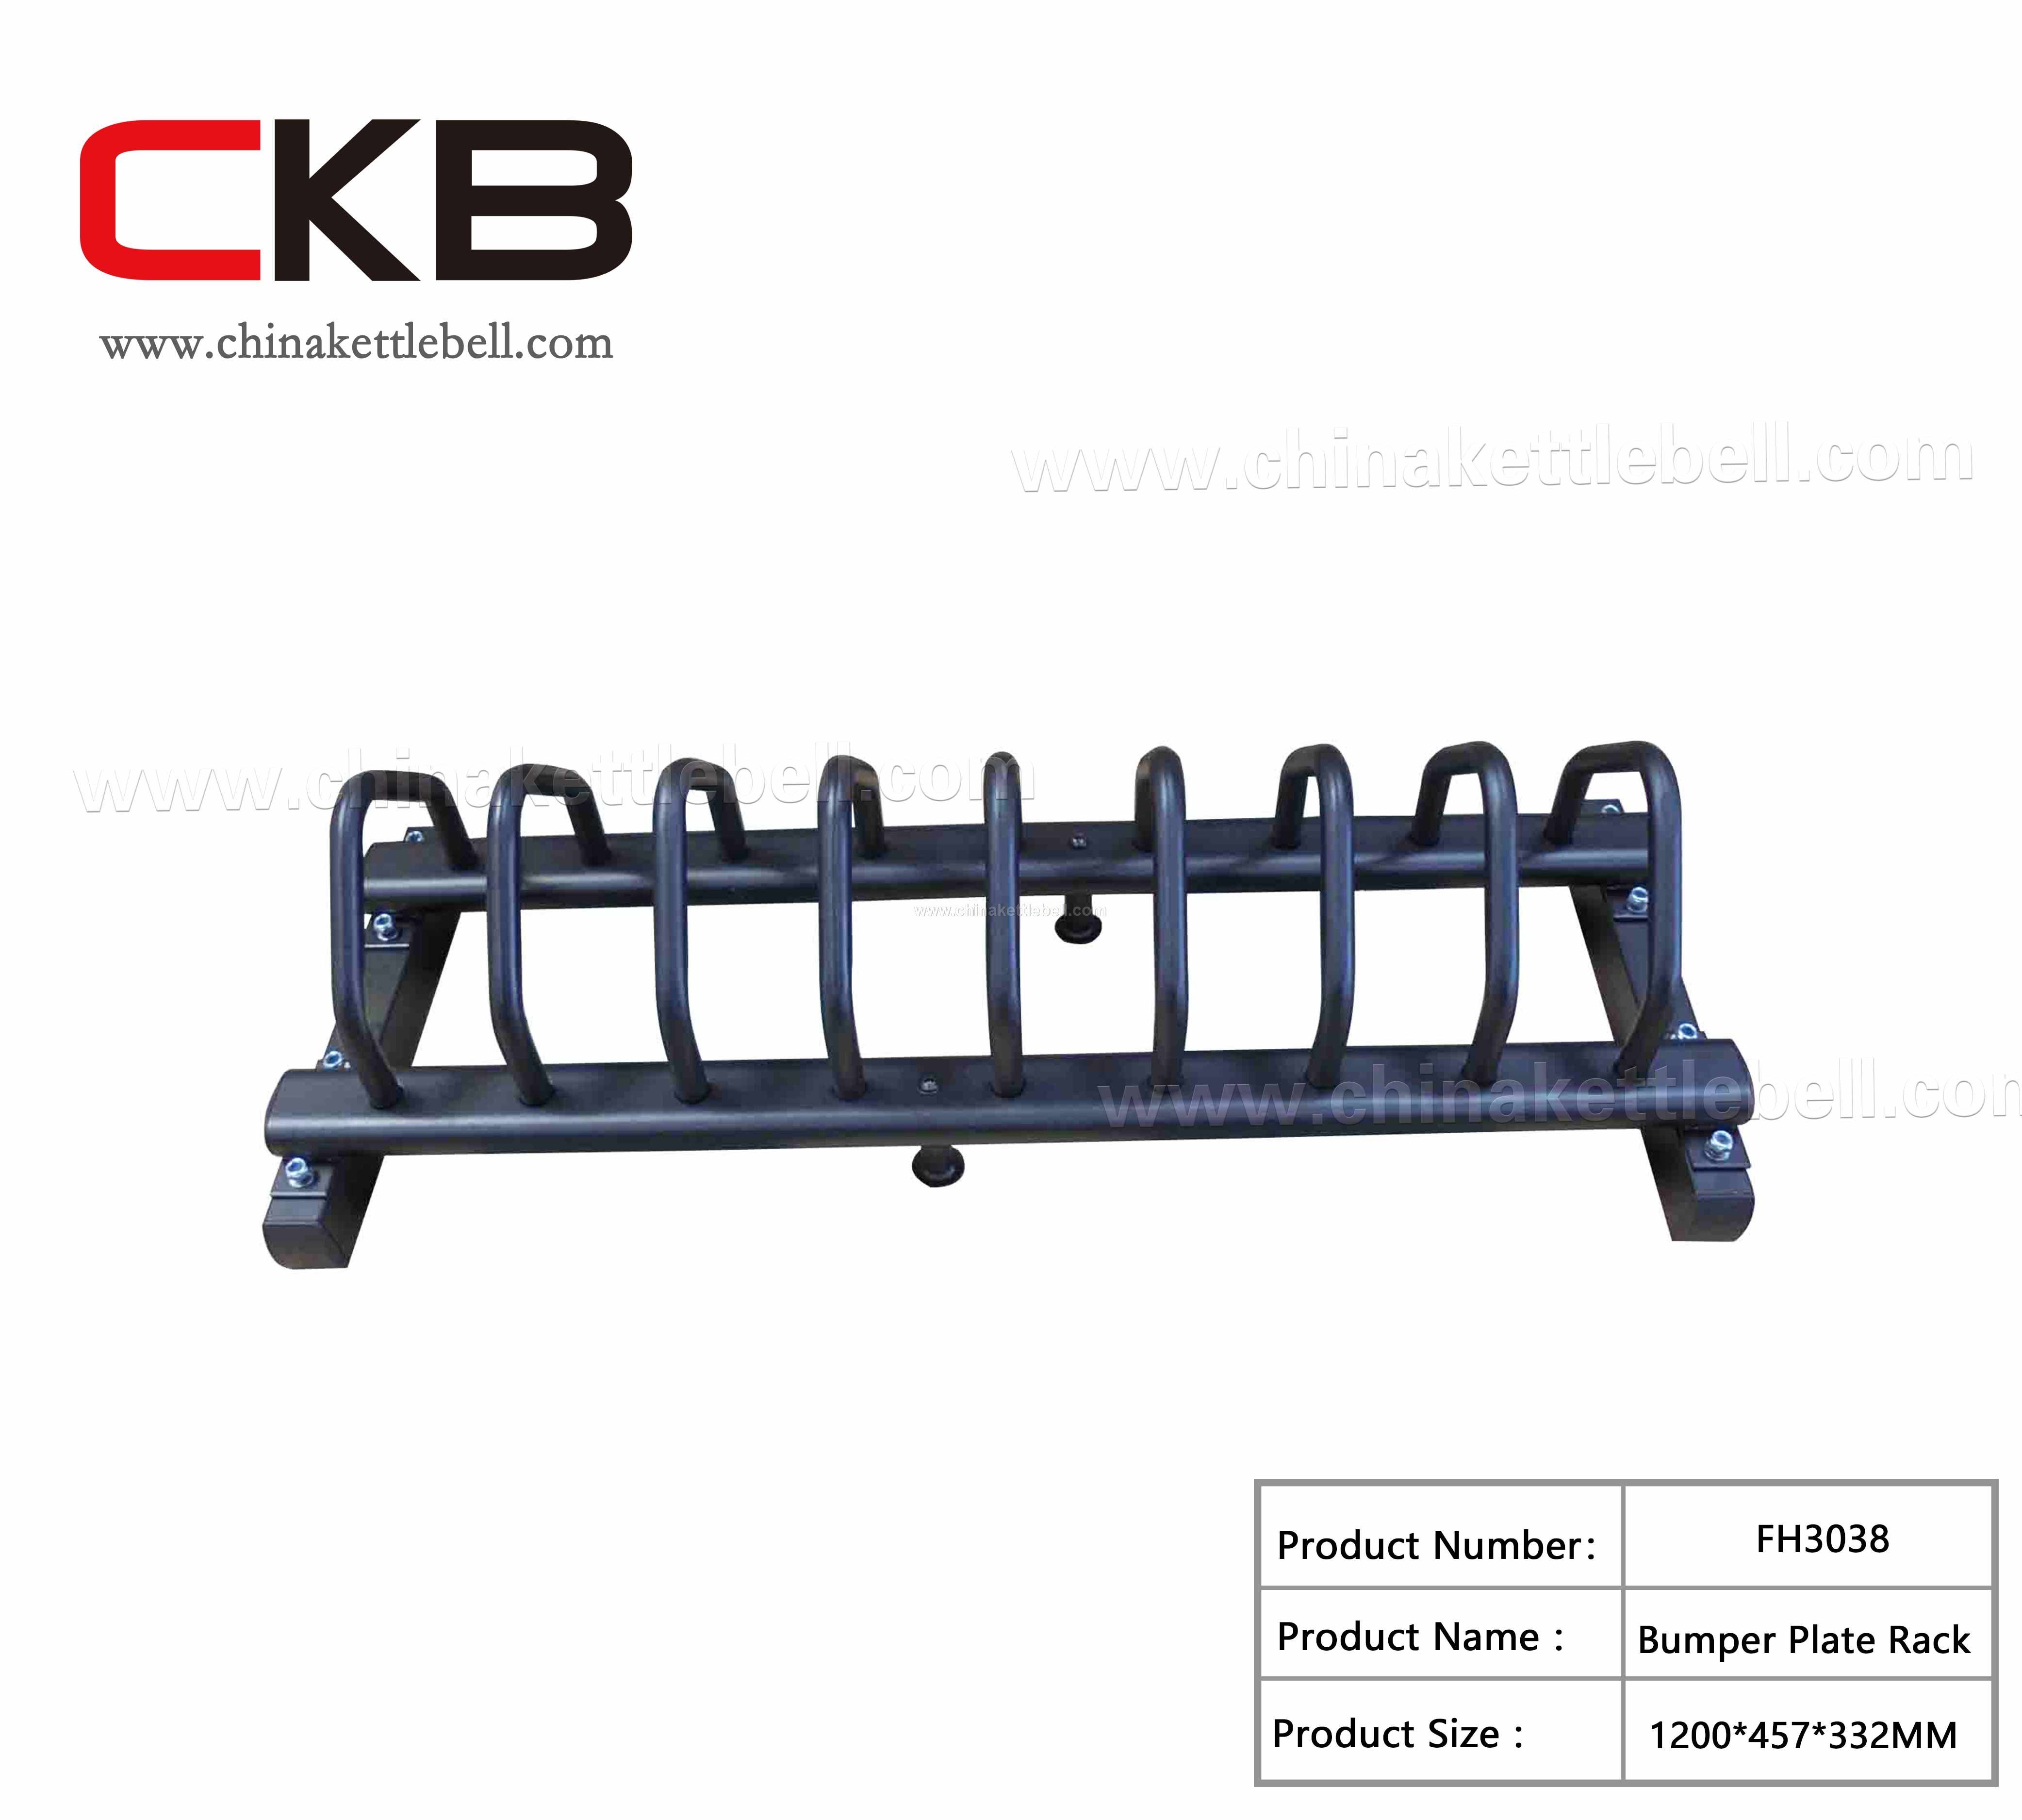 Bumper plate rack